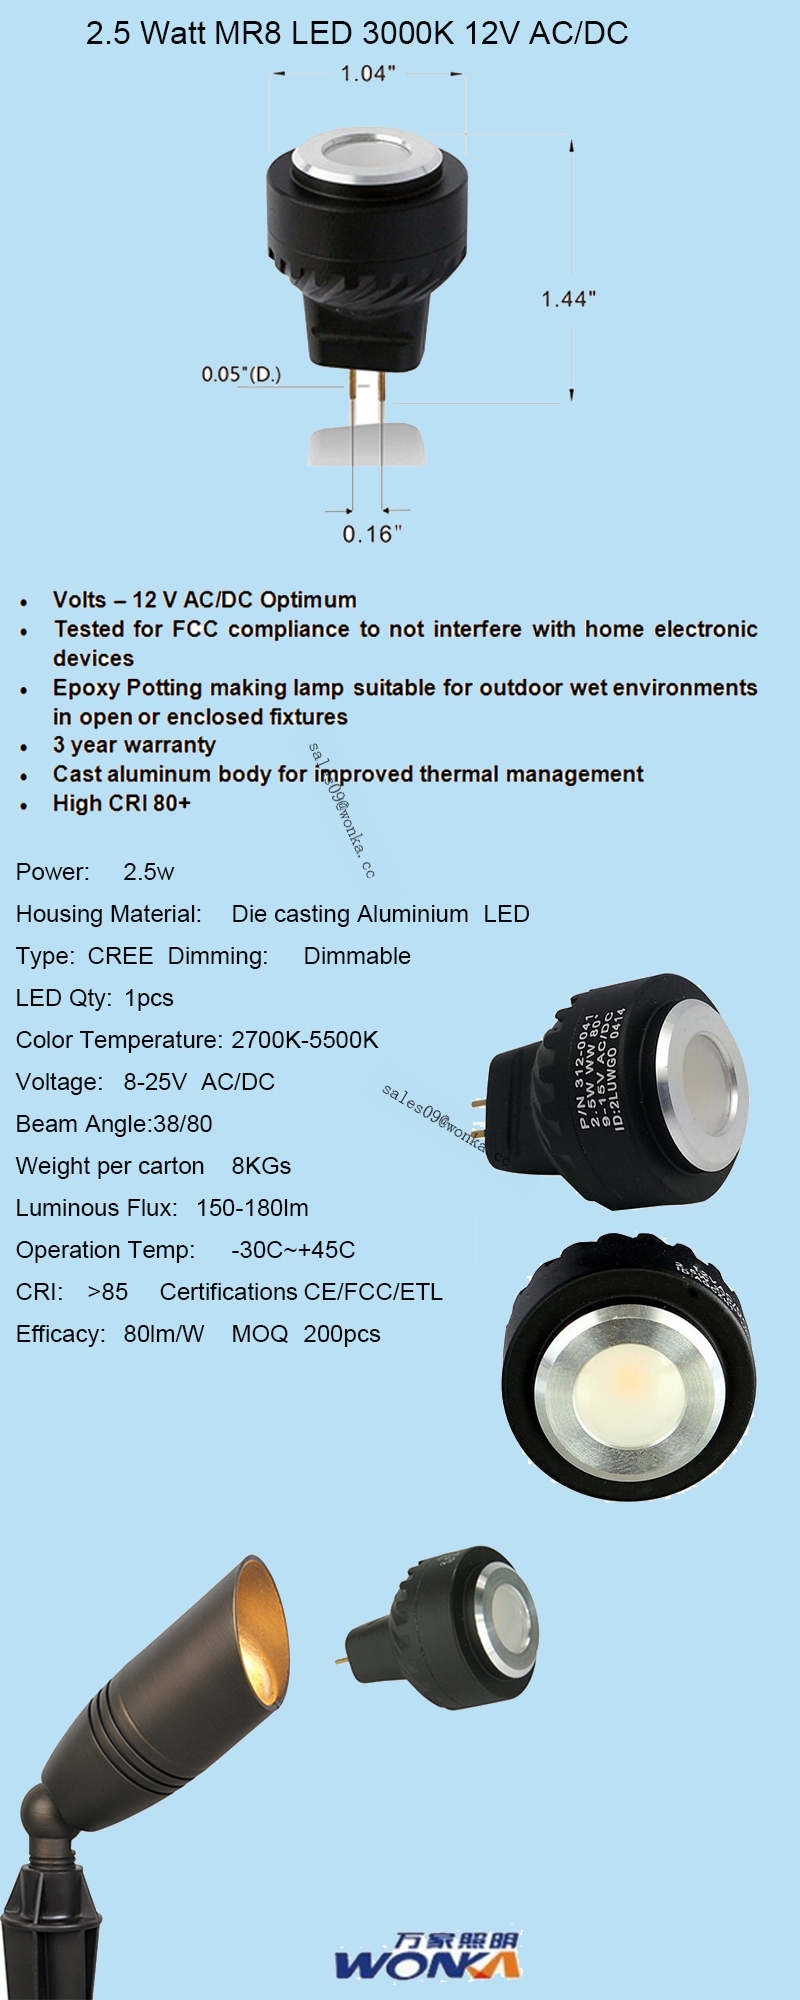 Mr8 LED Bulbs for Landscape Lighting/LED Spotlight